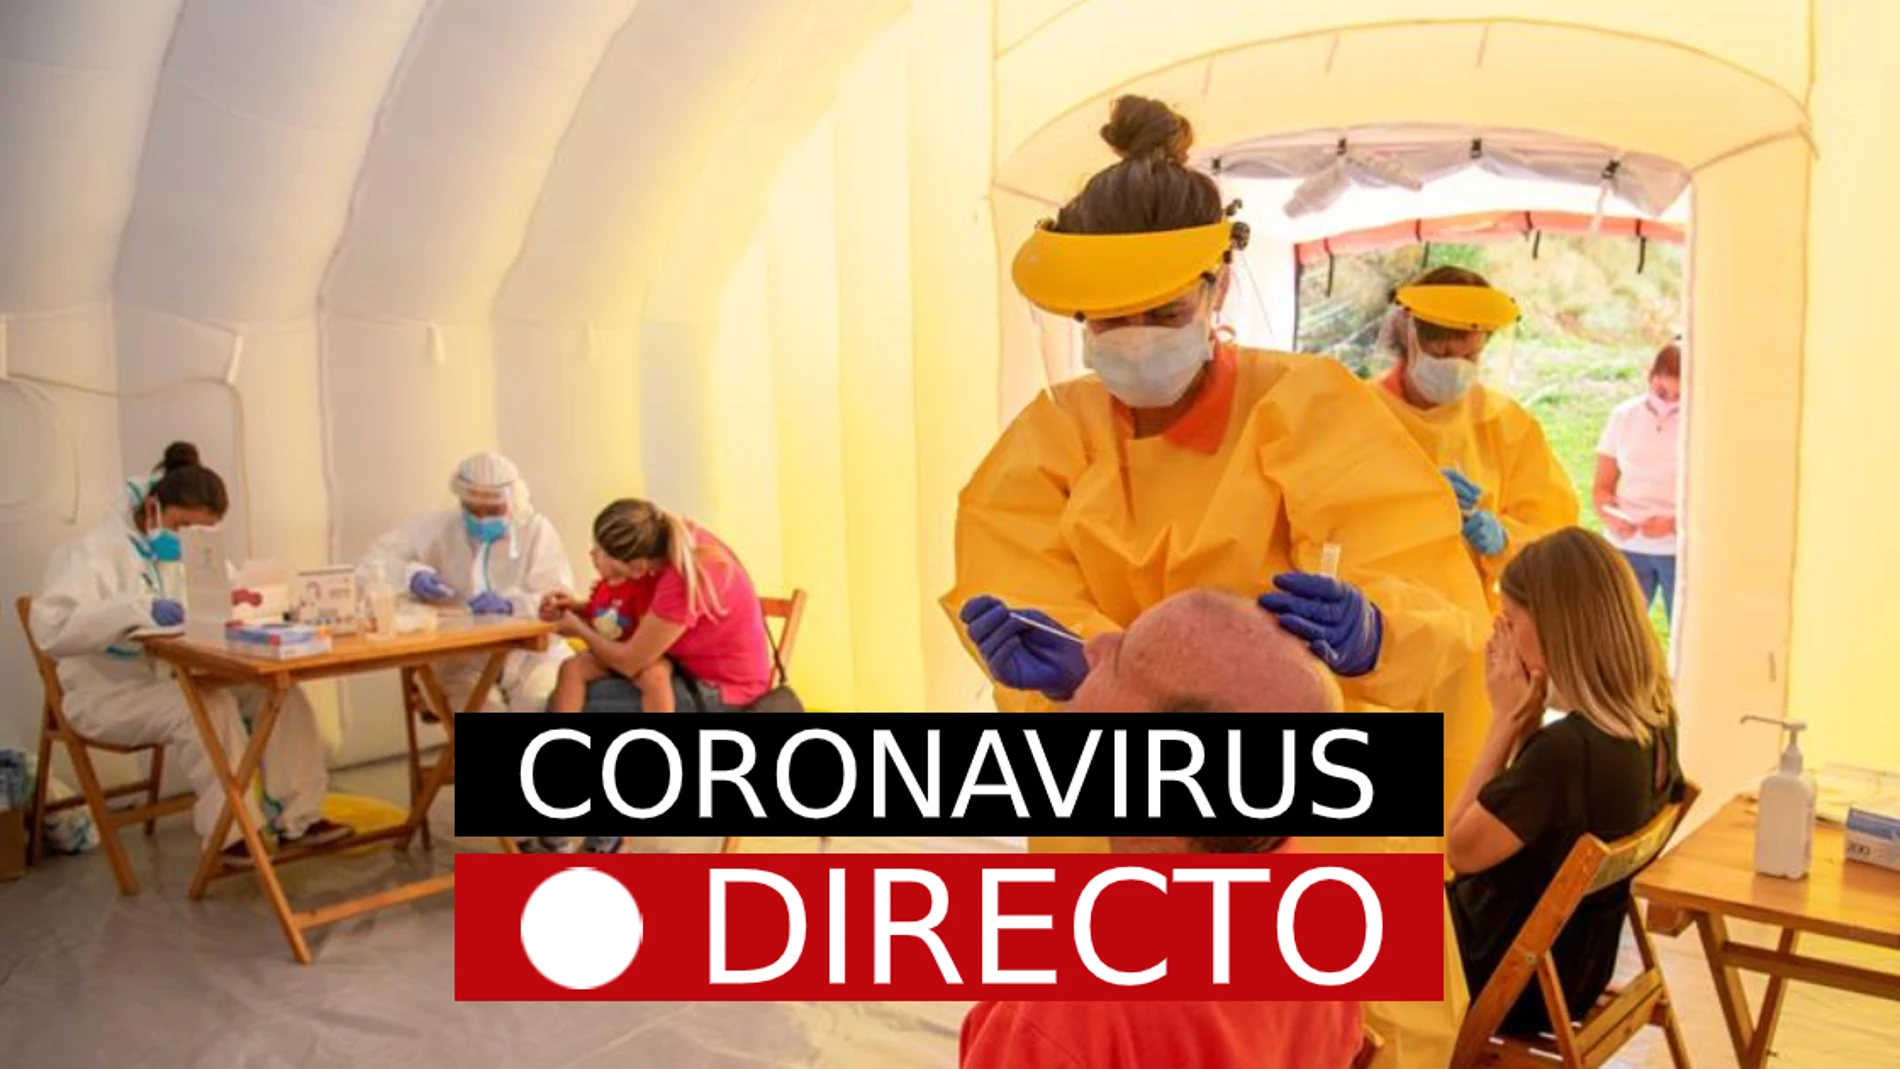 Coronavirus | Directo